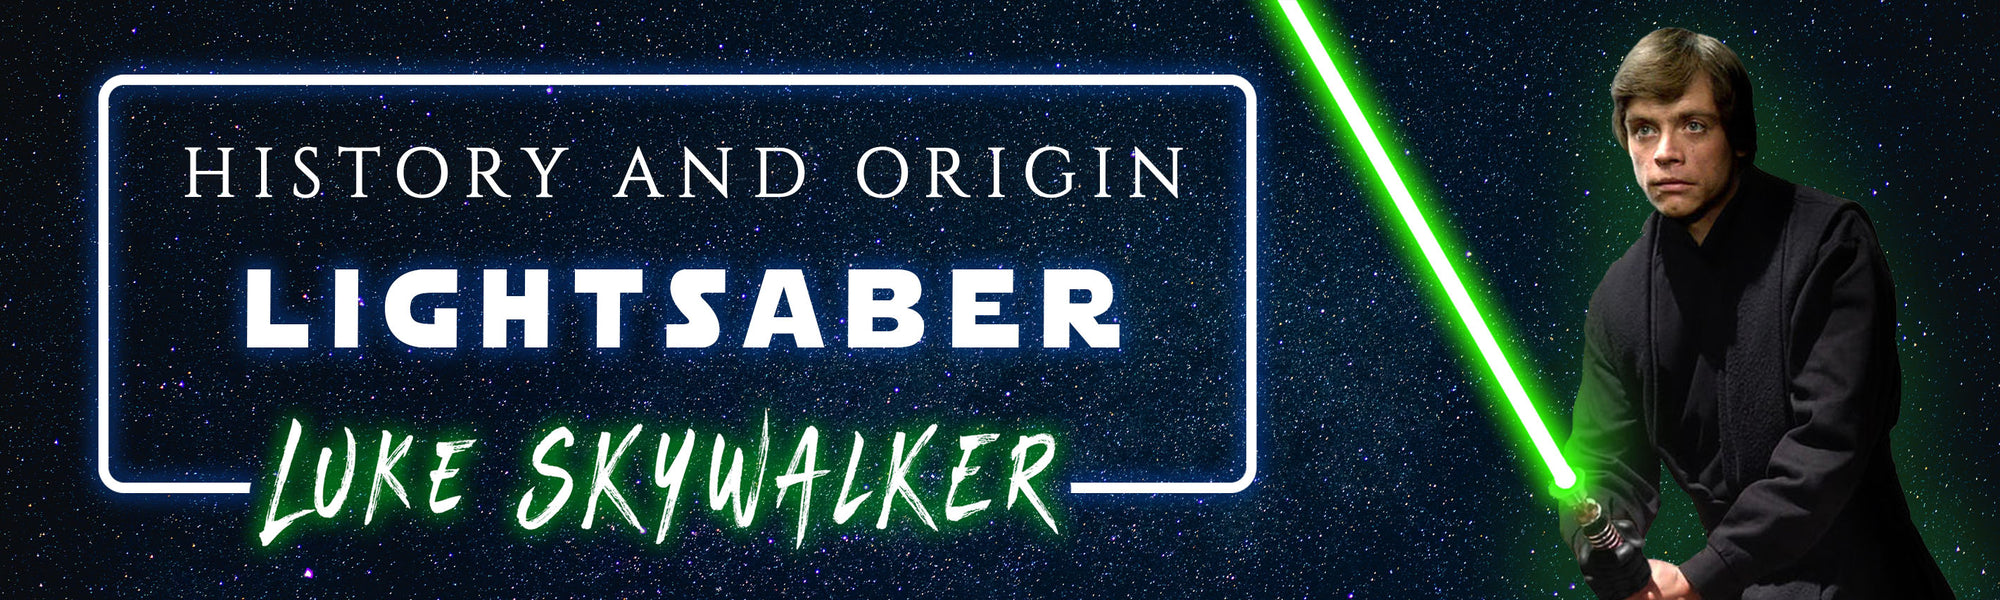 Luke Skywalker's green lightsaber